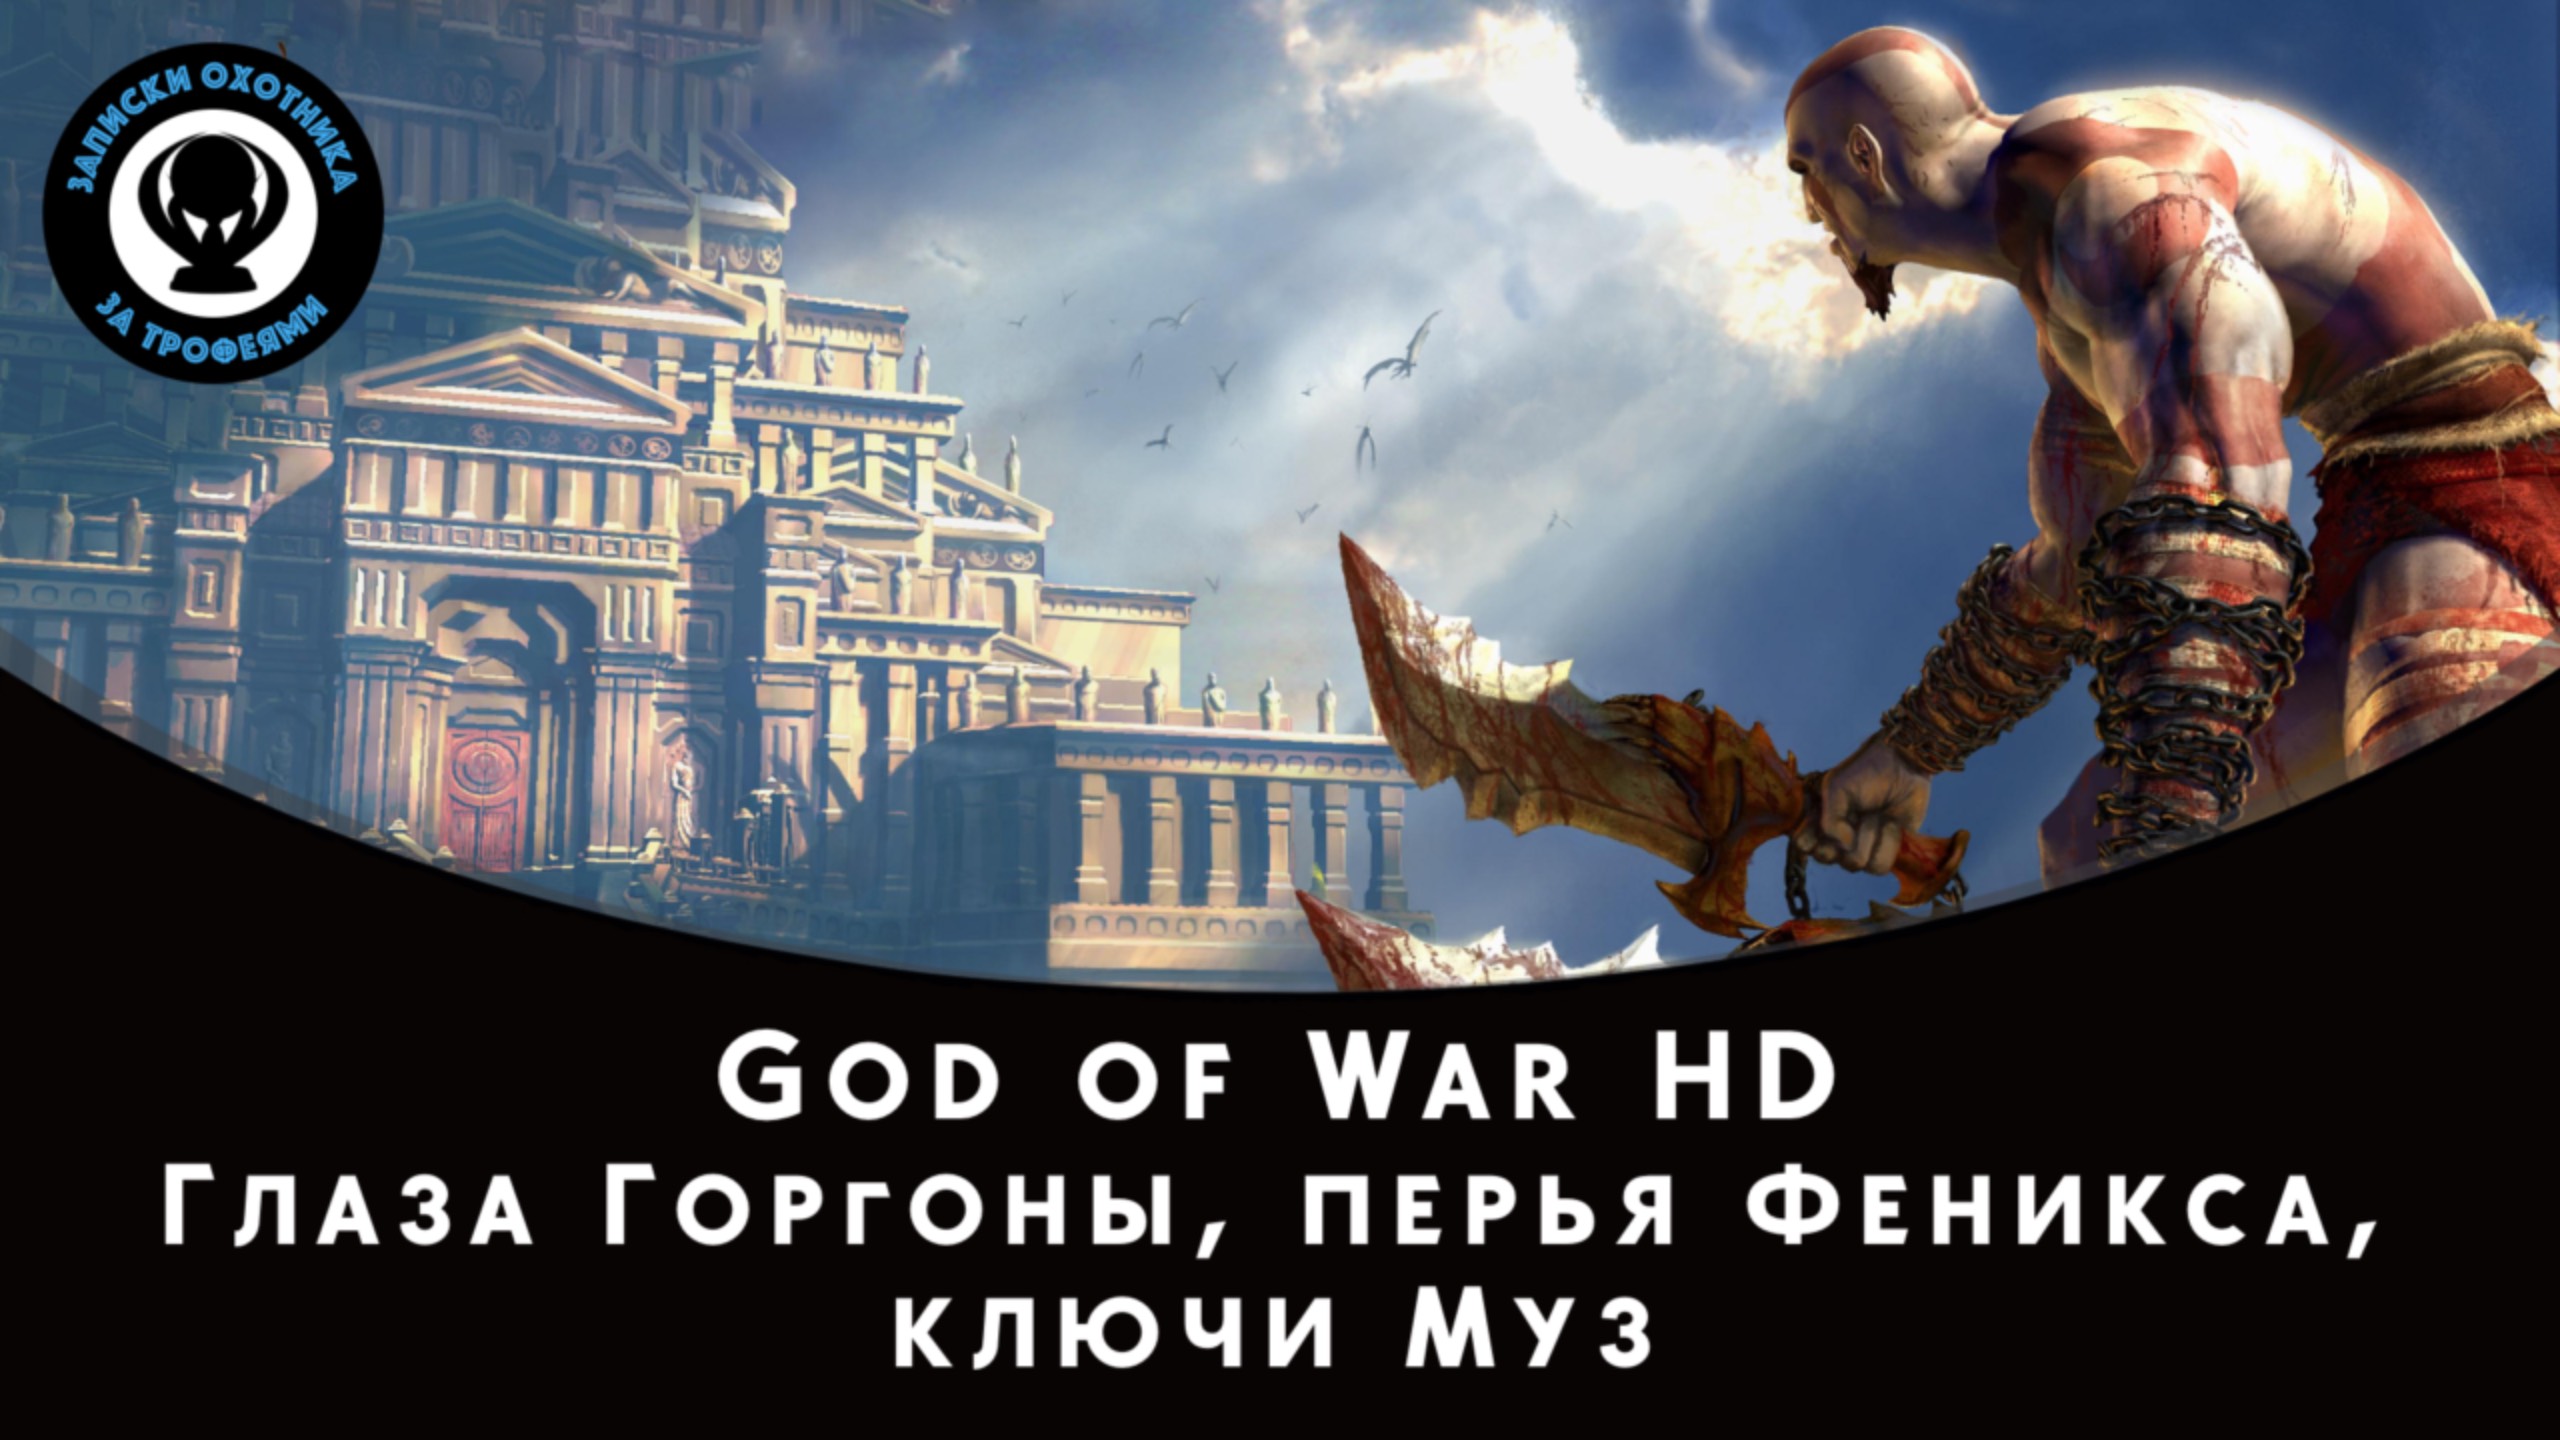 God of War HD — Все коллекционные предметы (Глаза Горгоны, Перья Феникса и Ключи Муз)